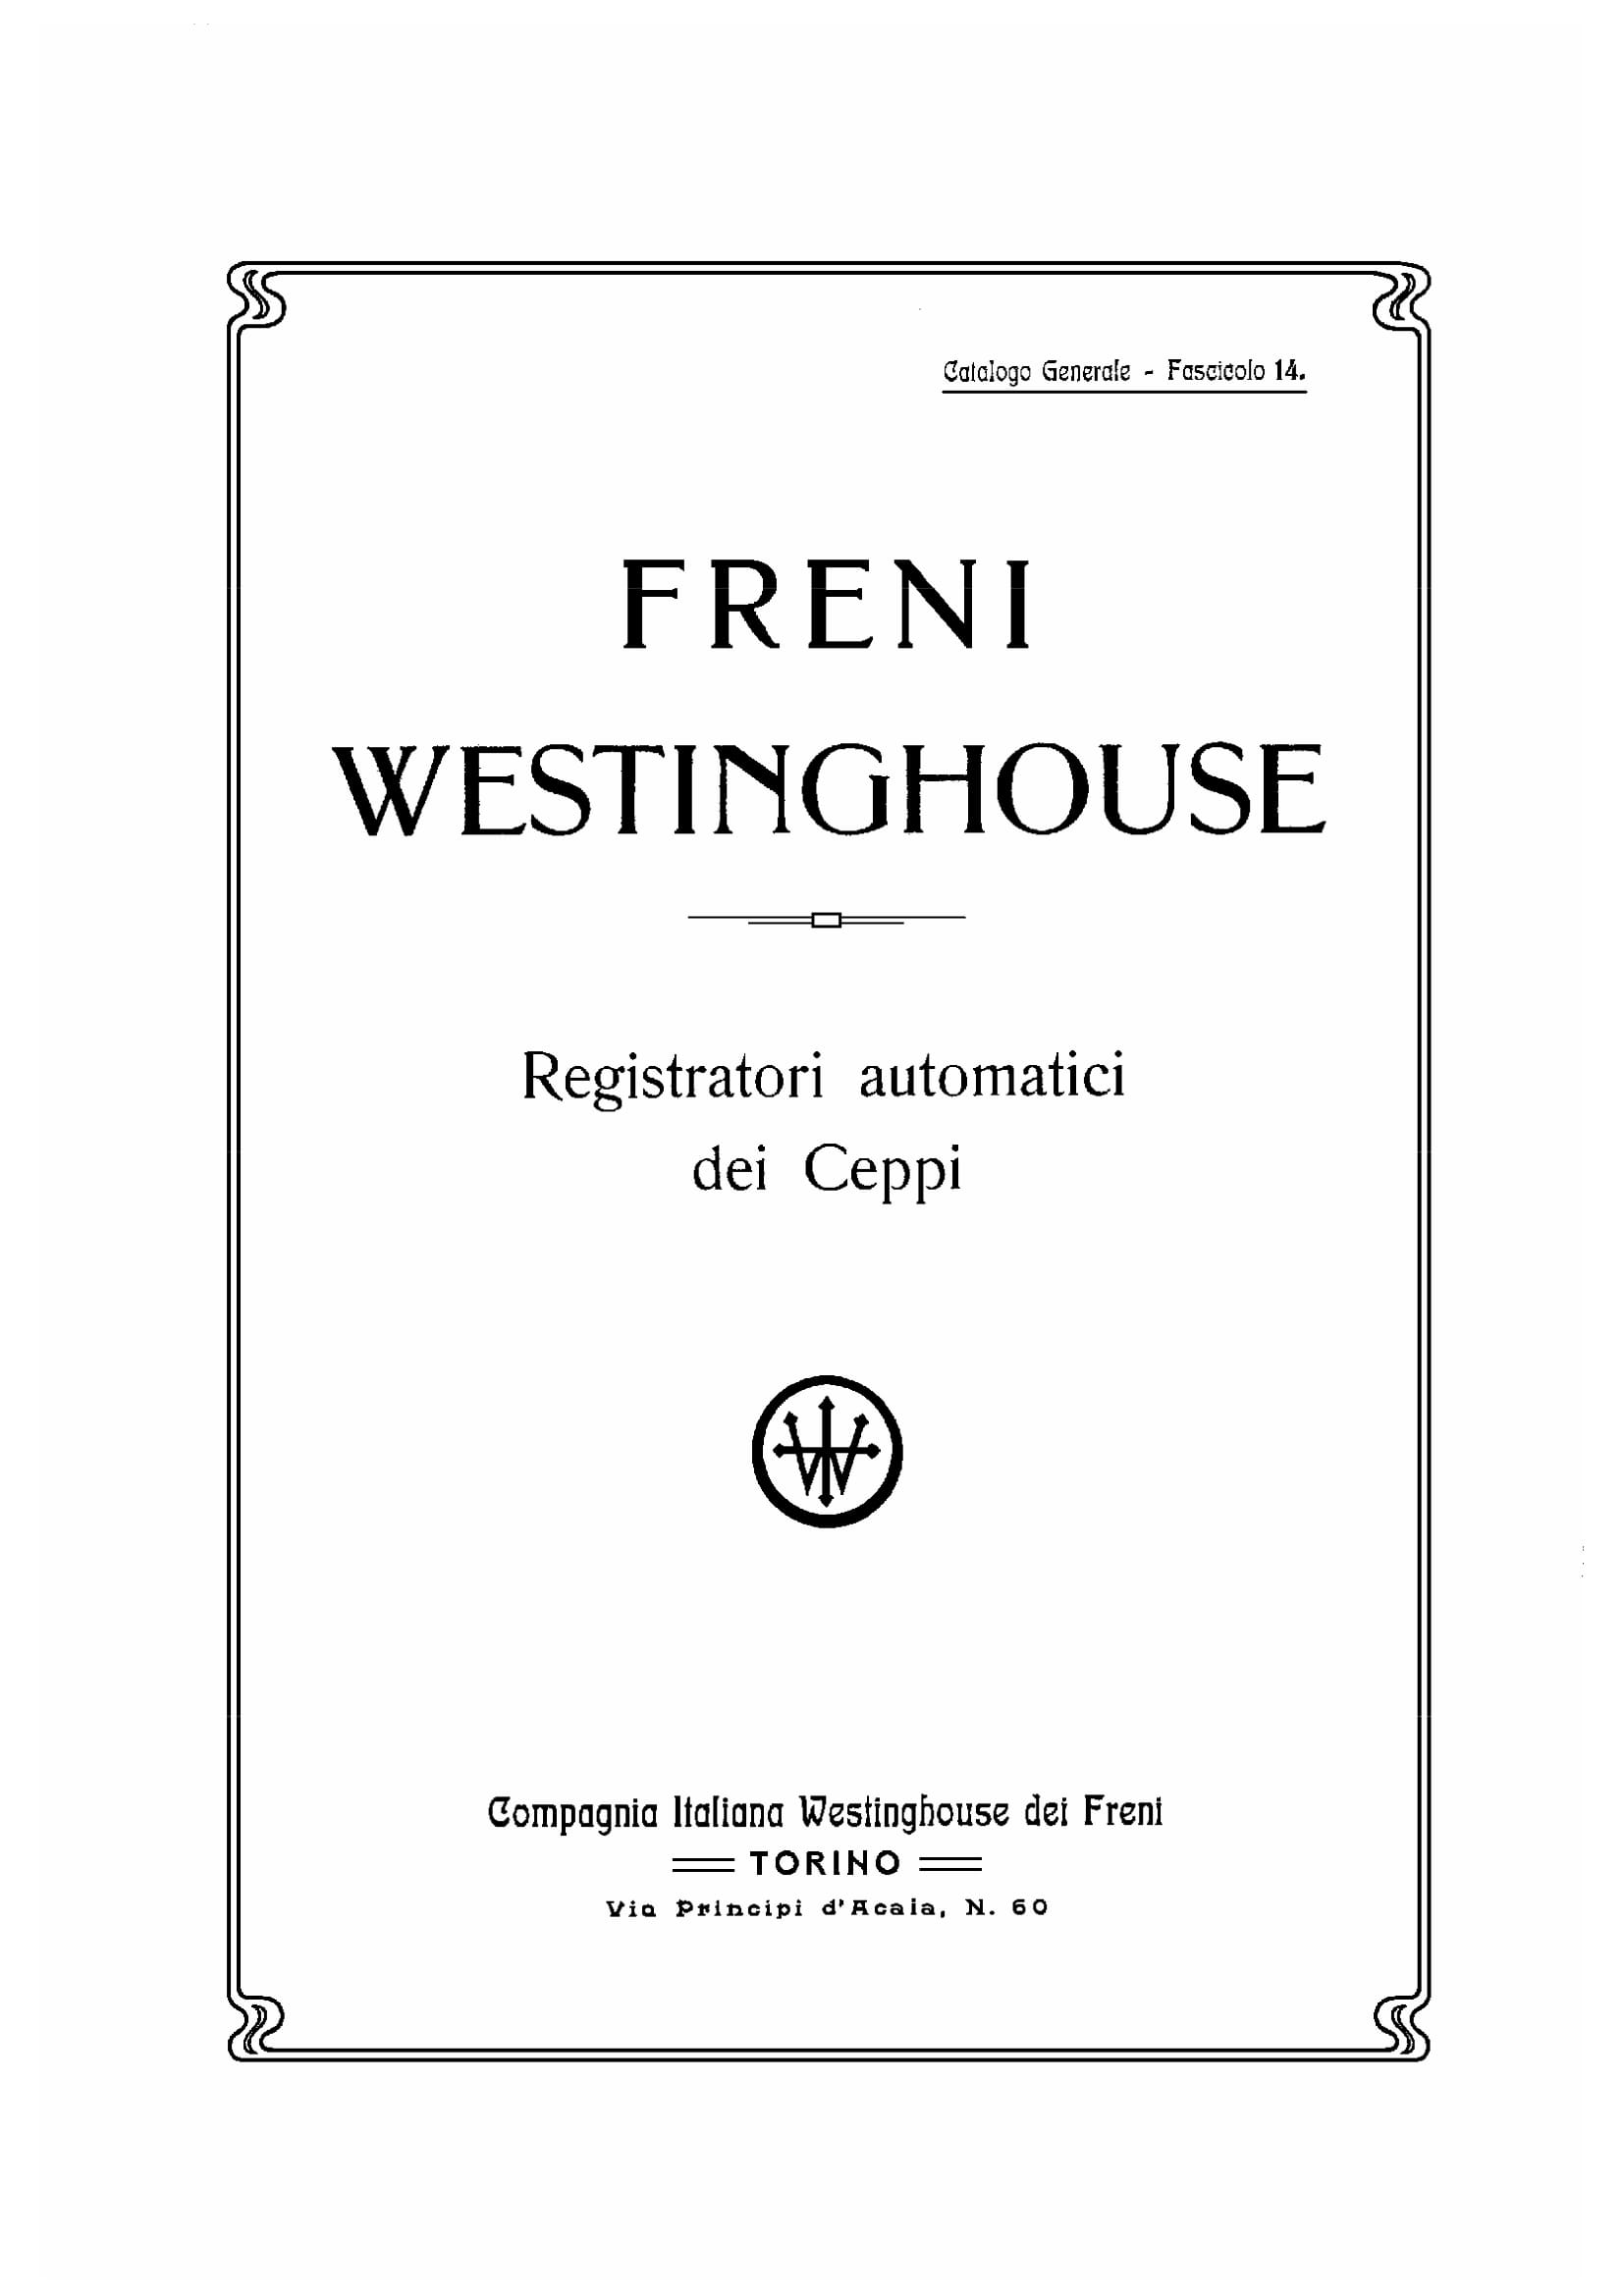 CATALOGO WESTINGHOUSE-260